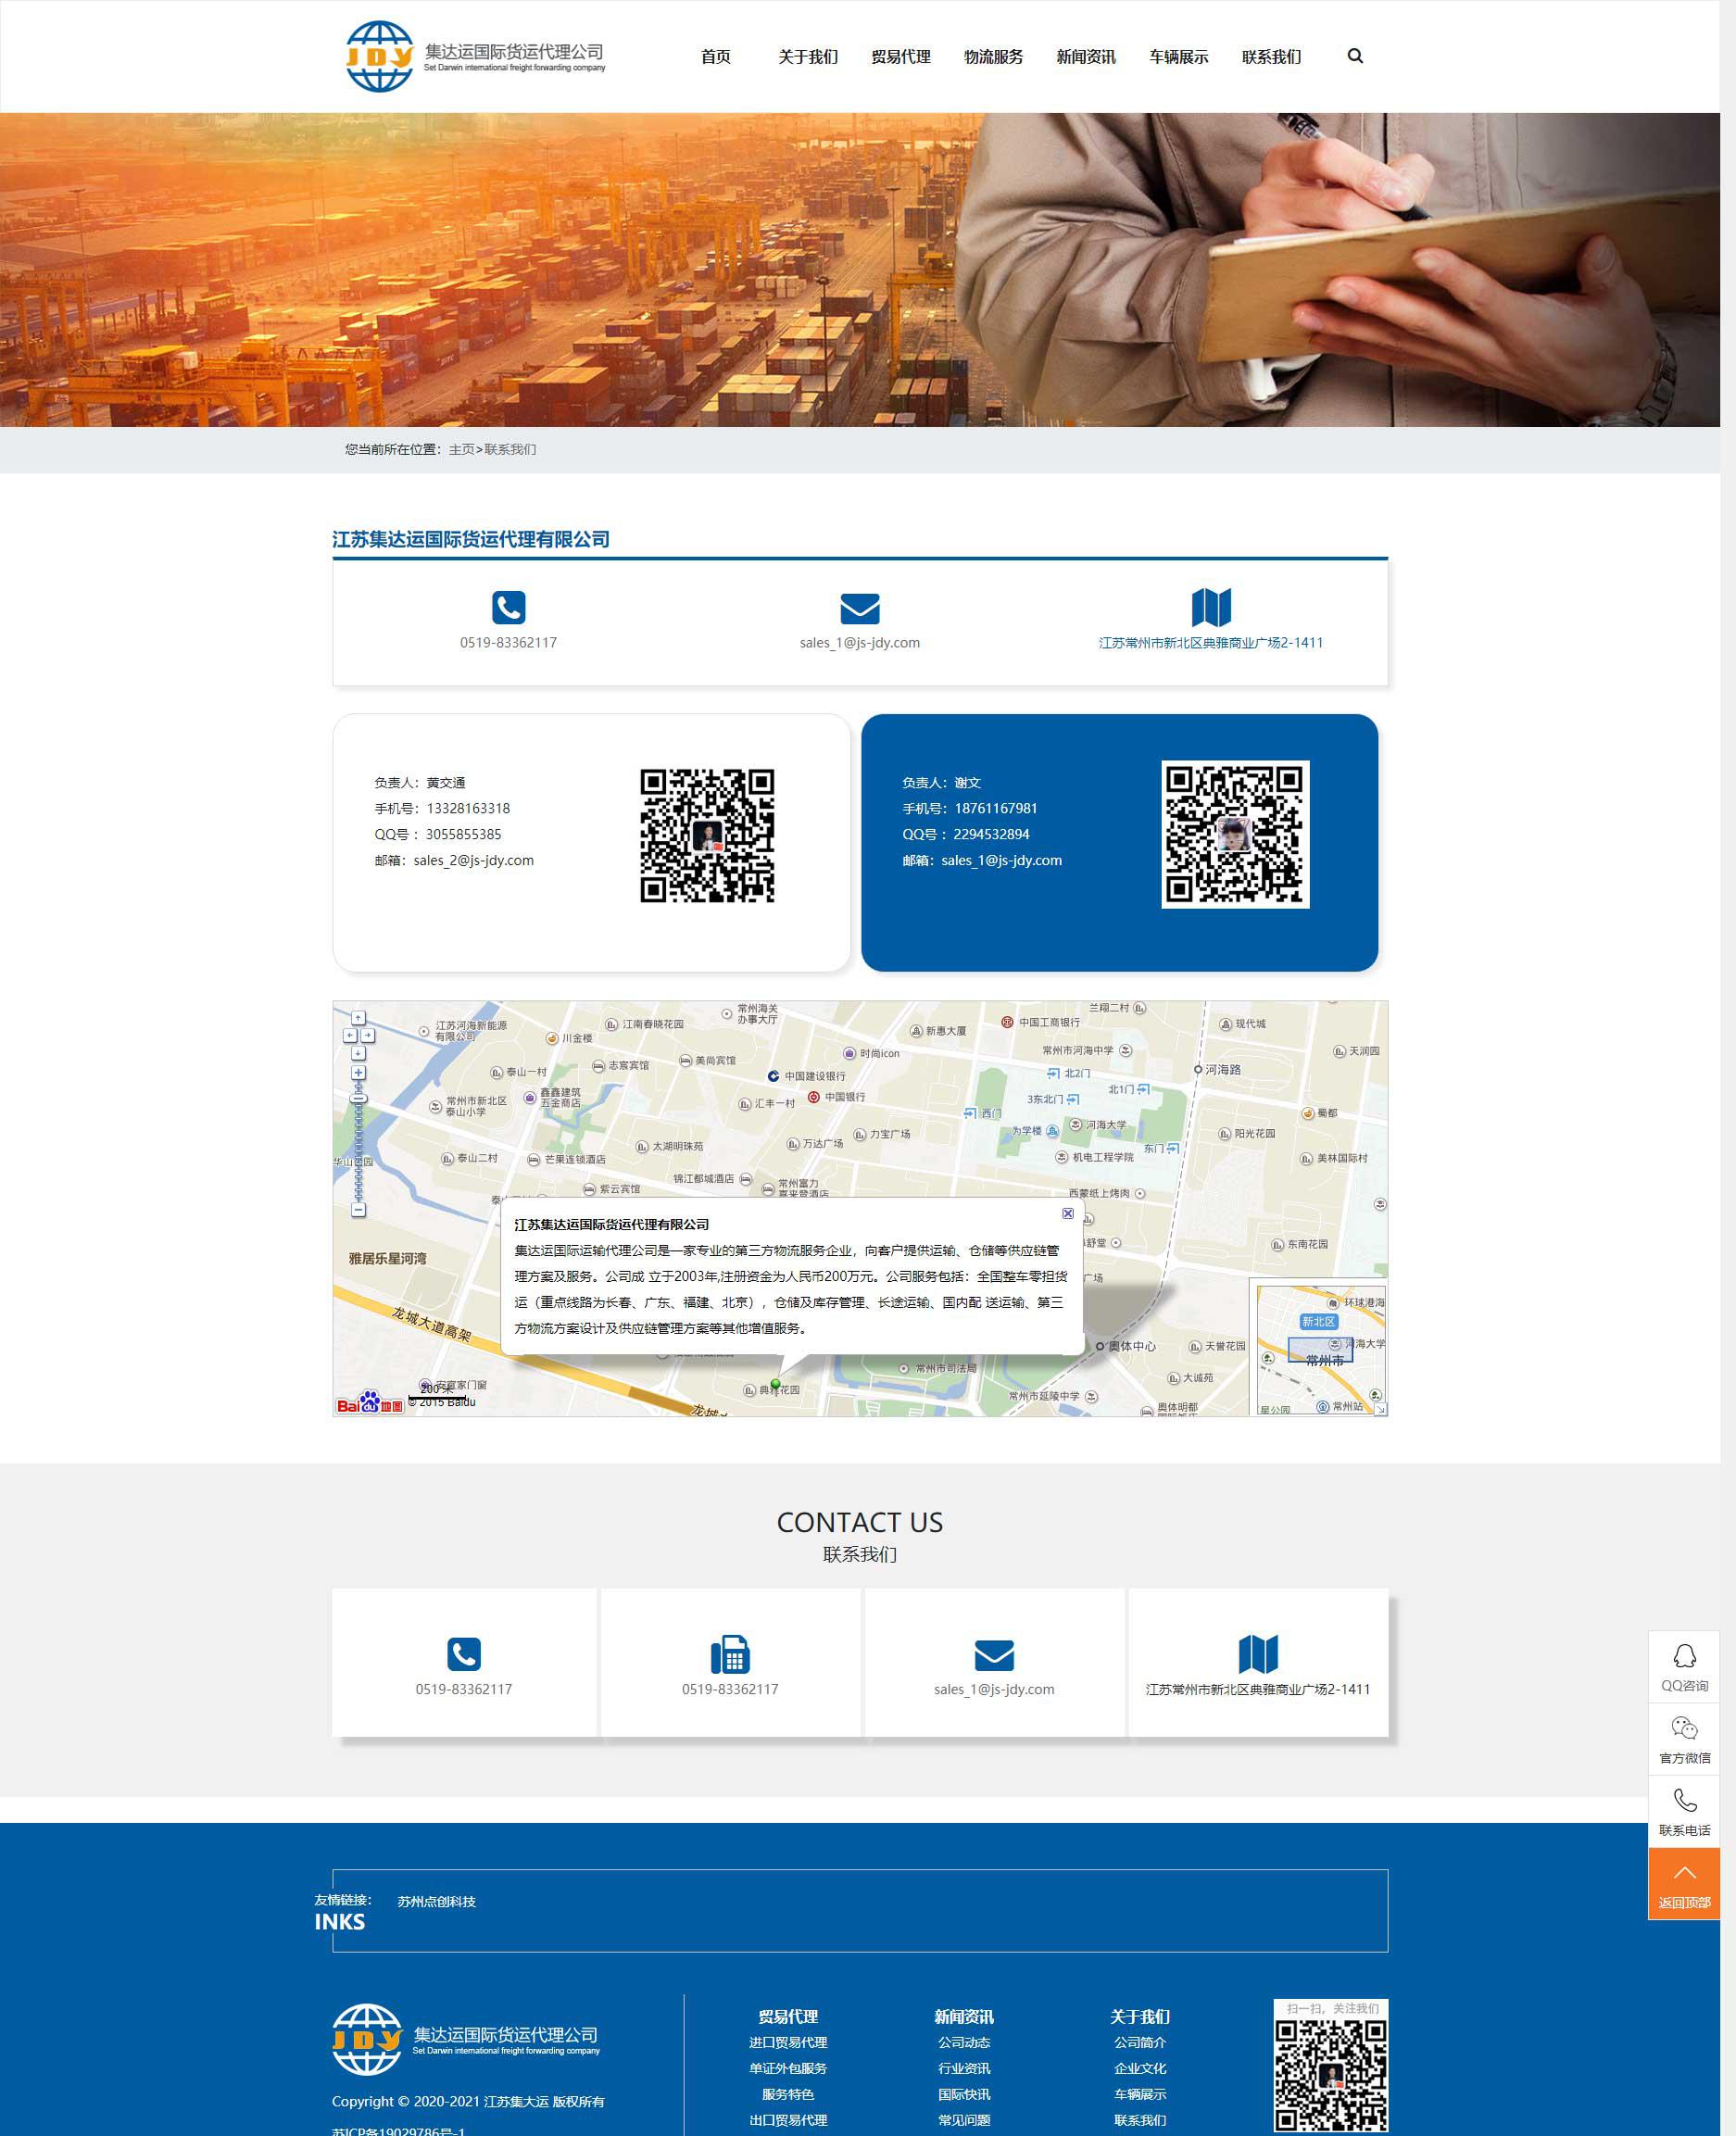 苏州网站建设公司点创科技为江苏集达运国际运输代理公司设计的新联系我们面